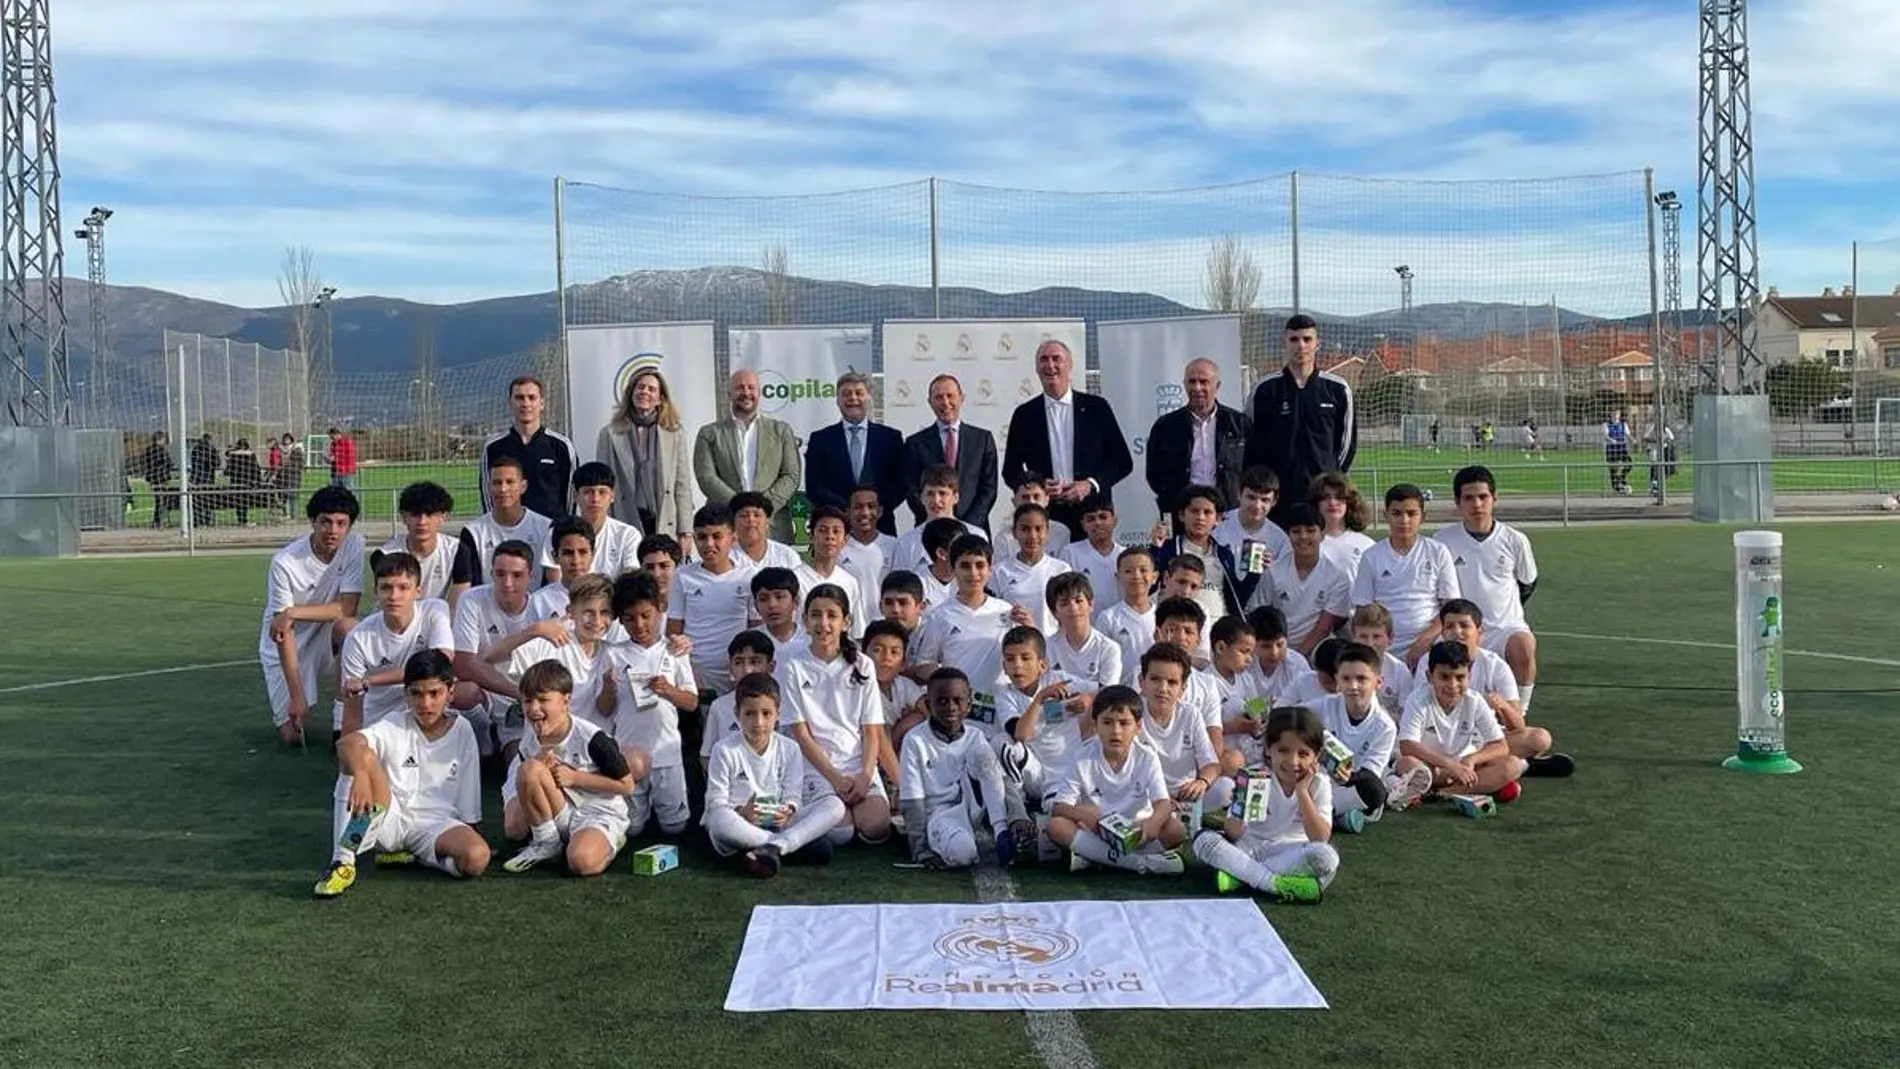 José Mazarías y Emilio Butragueño visitan a los niños de la Escuela de la Fundación Real Madrid Ecopilas